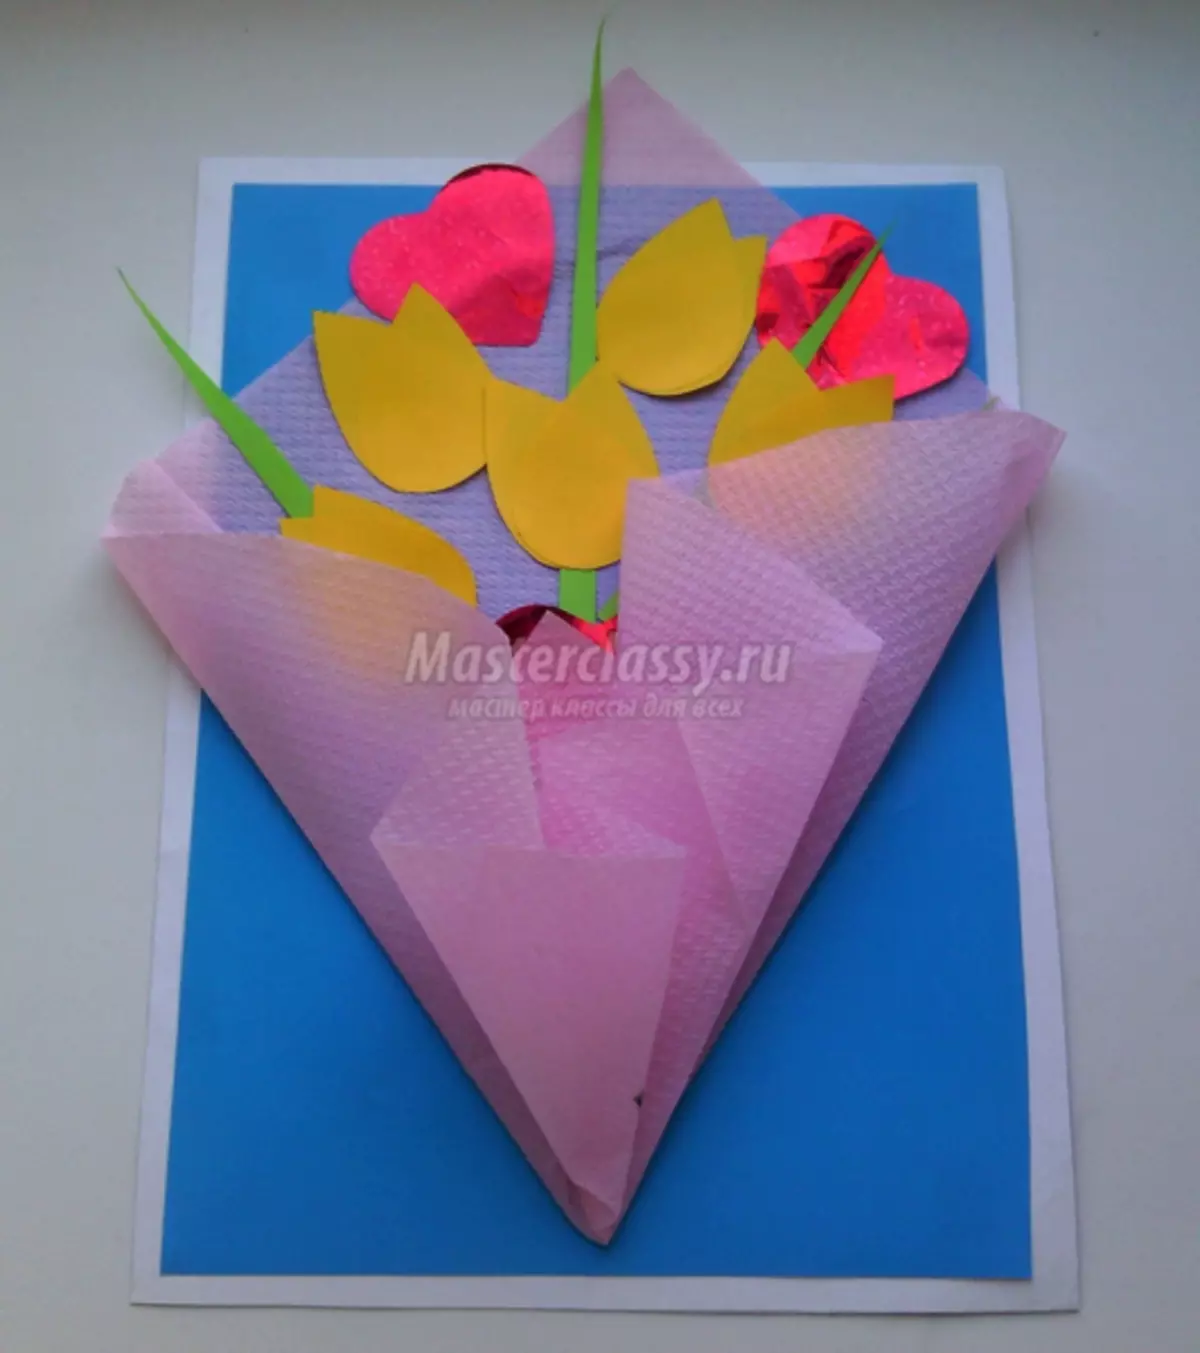 Πώς να κάνετε μια χάρτινη κάρτα χαρτιού με λουλούδια μέχρι τις 8 Μαρτίου